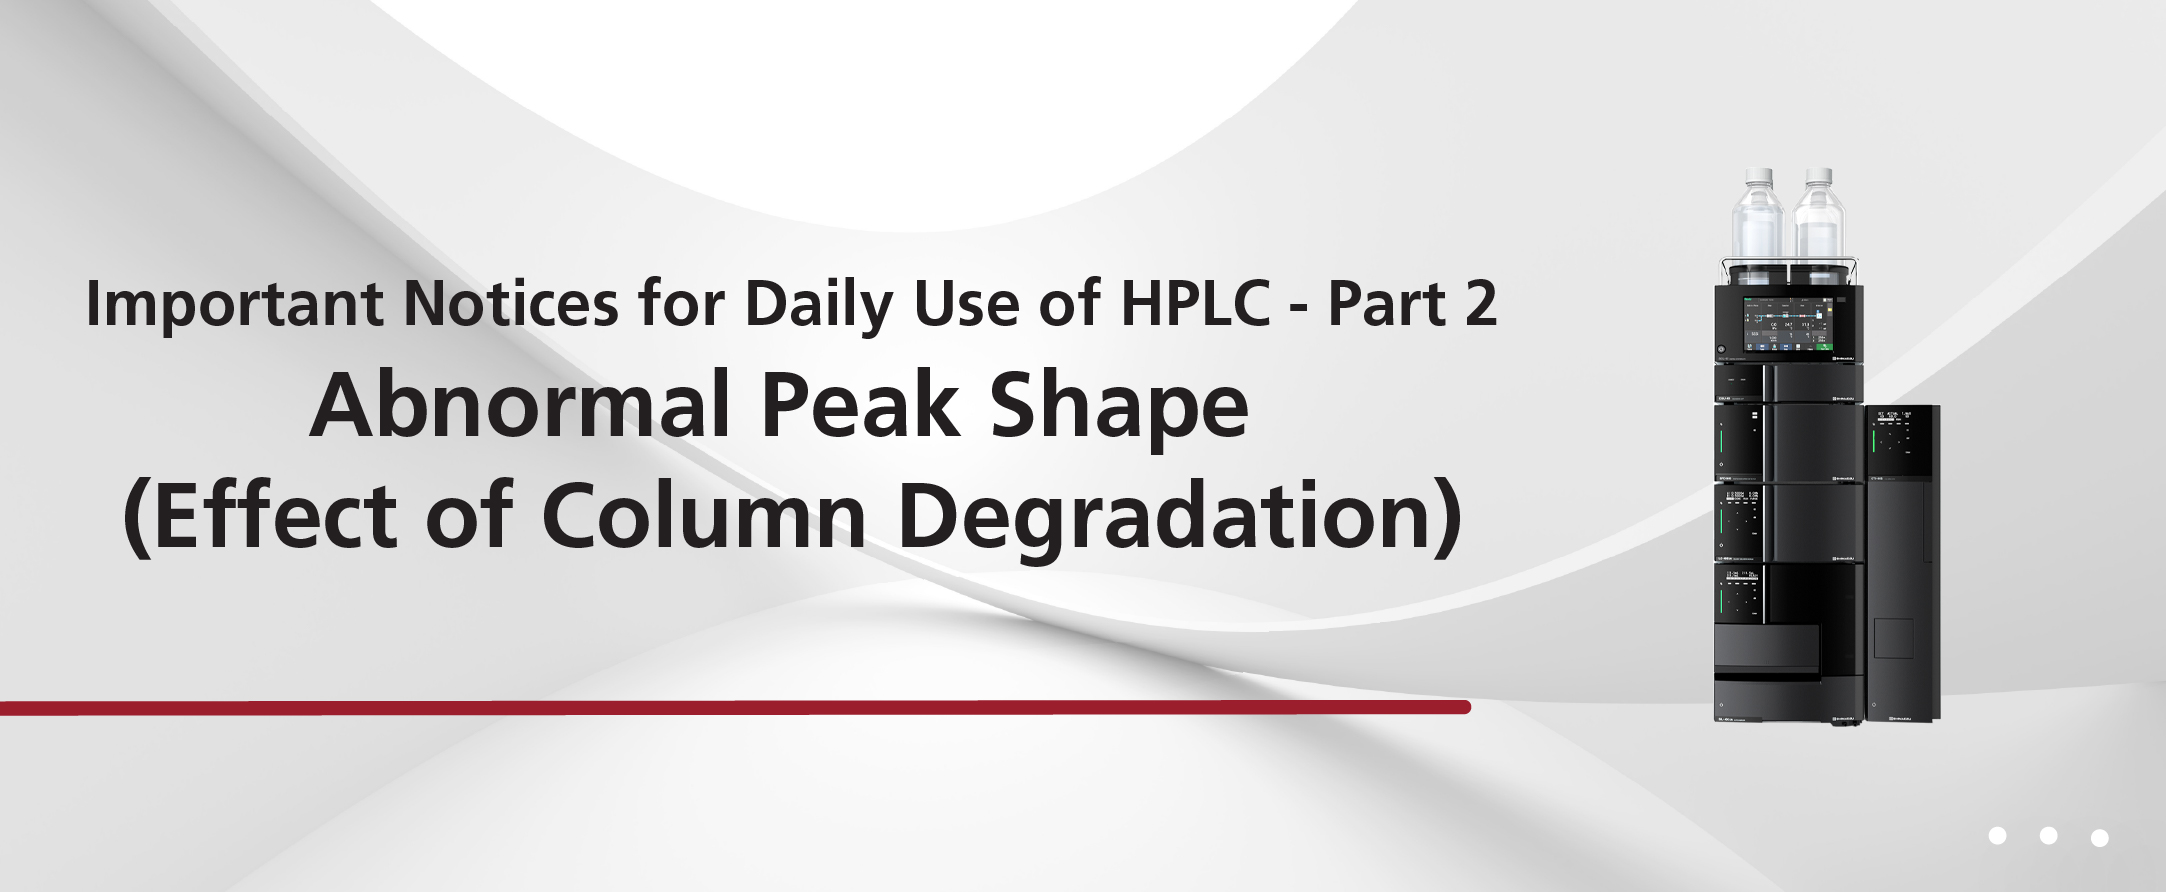 Abnormal Peak Shape (Effect of Column Degradation)